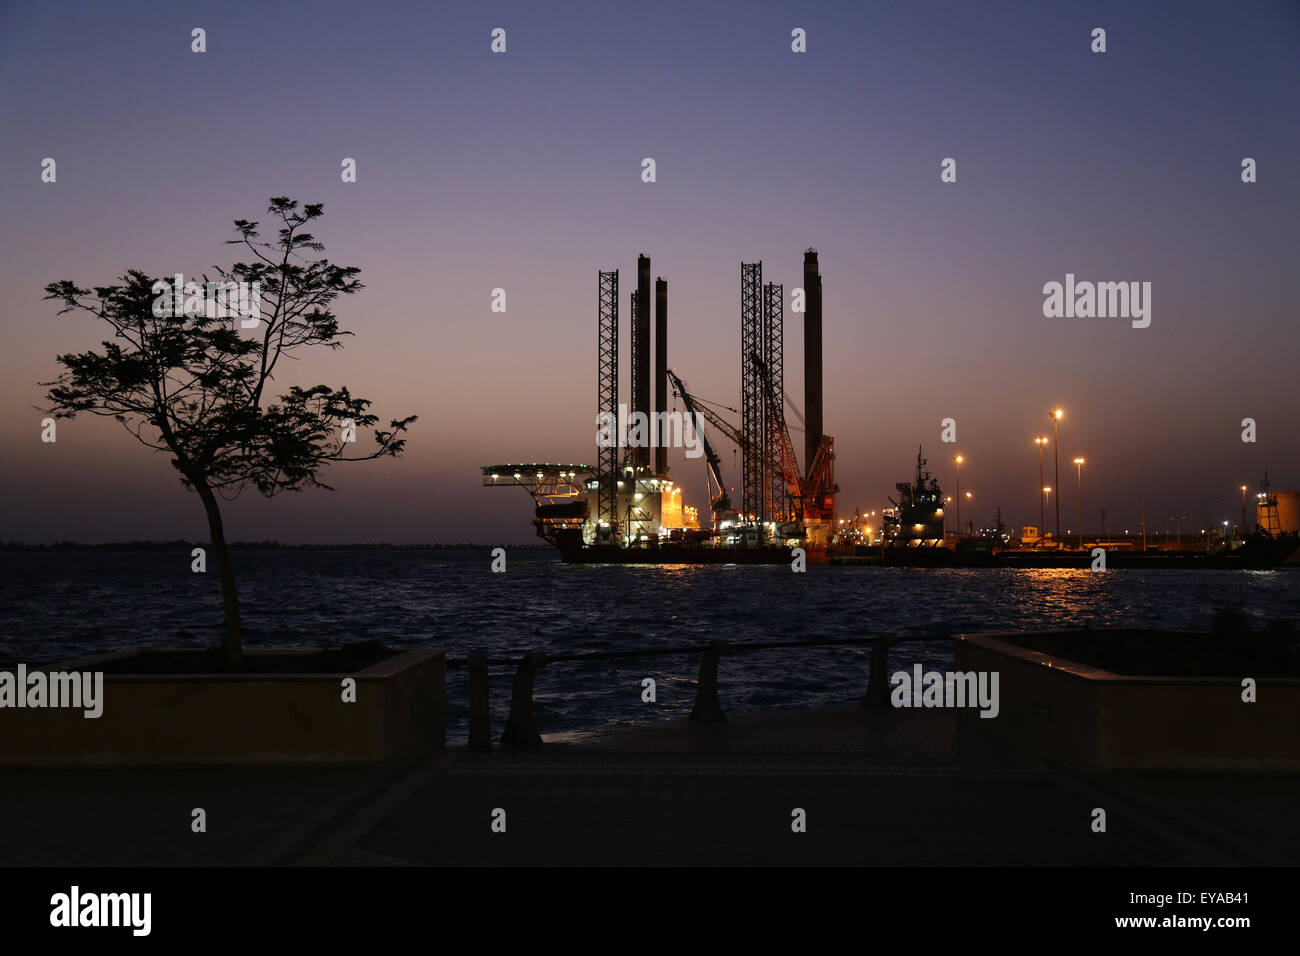 Une plate-forme pétrolière ancré au port de Mina Abu Dhabi, - une photo de nuit Banque D'Images